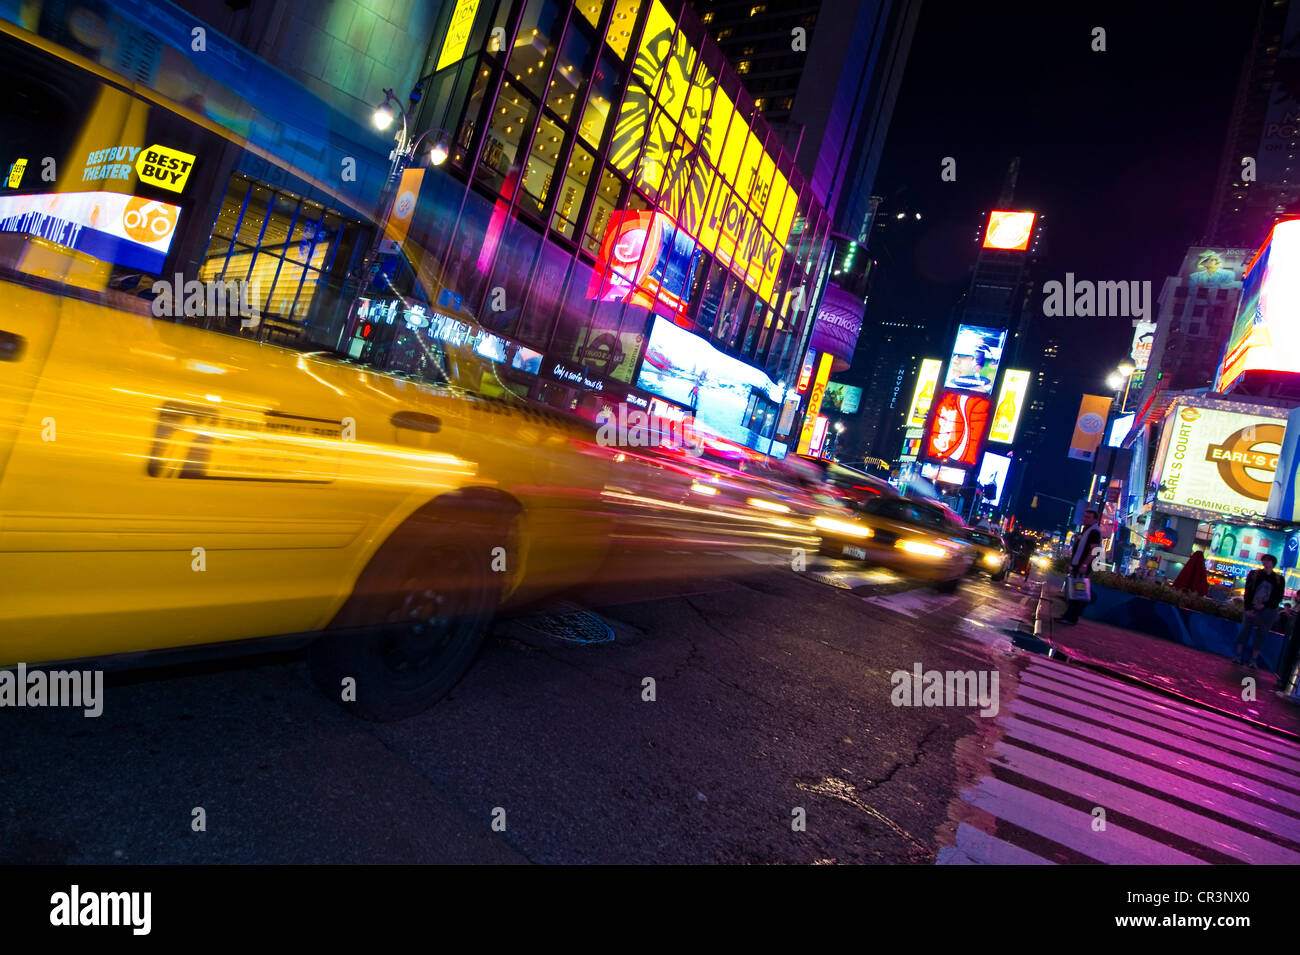 Le trafic routier de nuit, Broadway et Times Square, Manhattan, New York, USA, Amérique Latine Banque D'Images